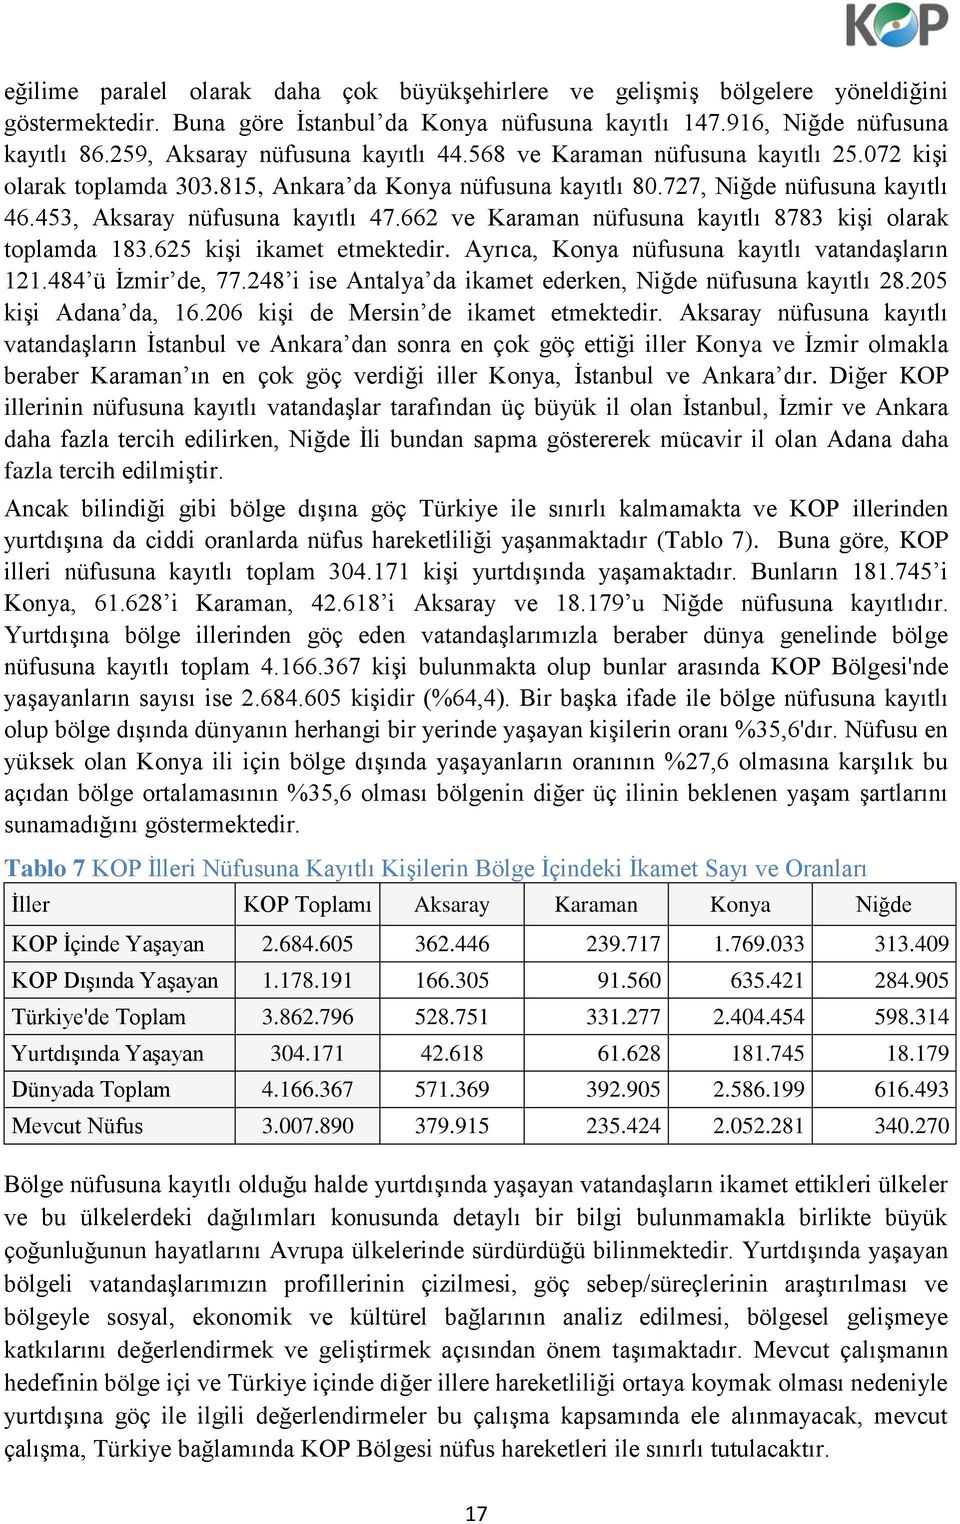 453, Aksaray nüfusuna kayıtlı 47.662 ve Karaman nüfusuna kayıtlı 8783 kişi olarak toplamda 183.625 kişi ikamet etmektedir. Ayrıca, Konya nüfusuna kayıtlı vatandaşların 121.484 ü İzmir de, 77.